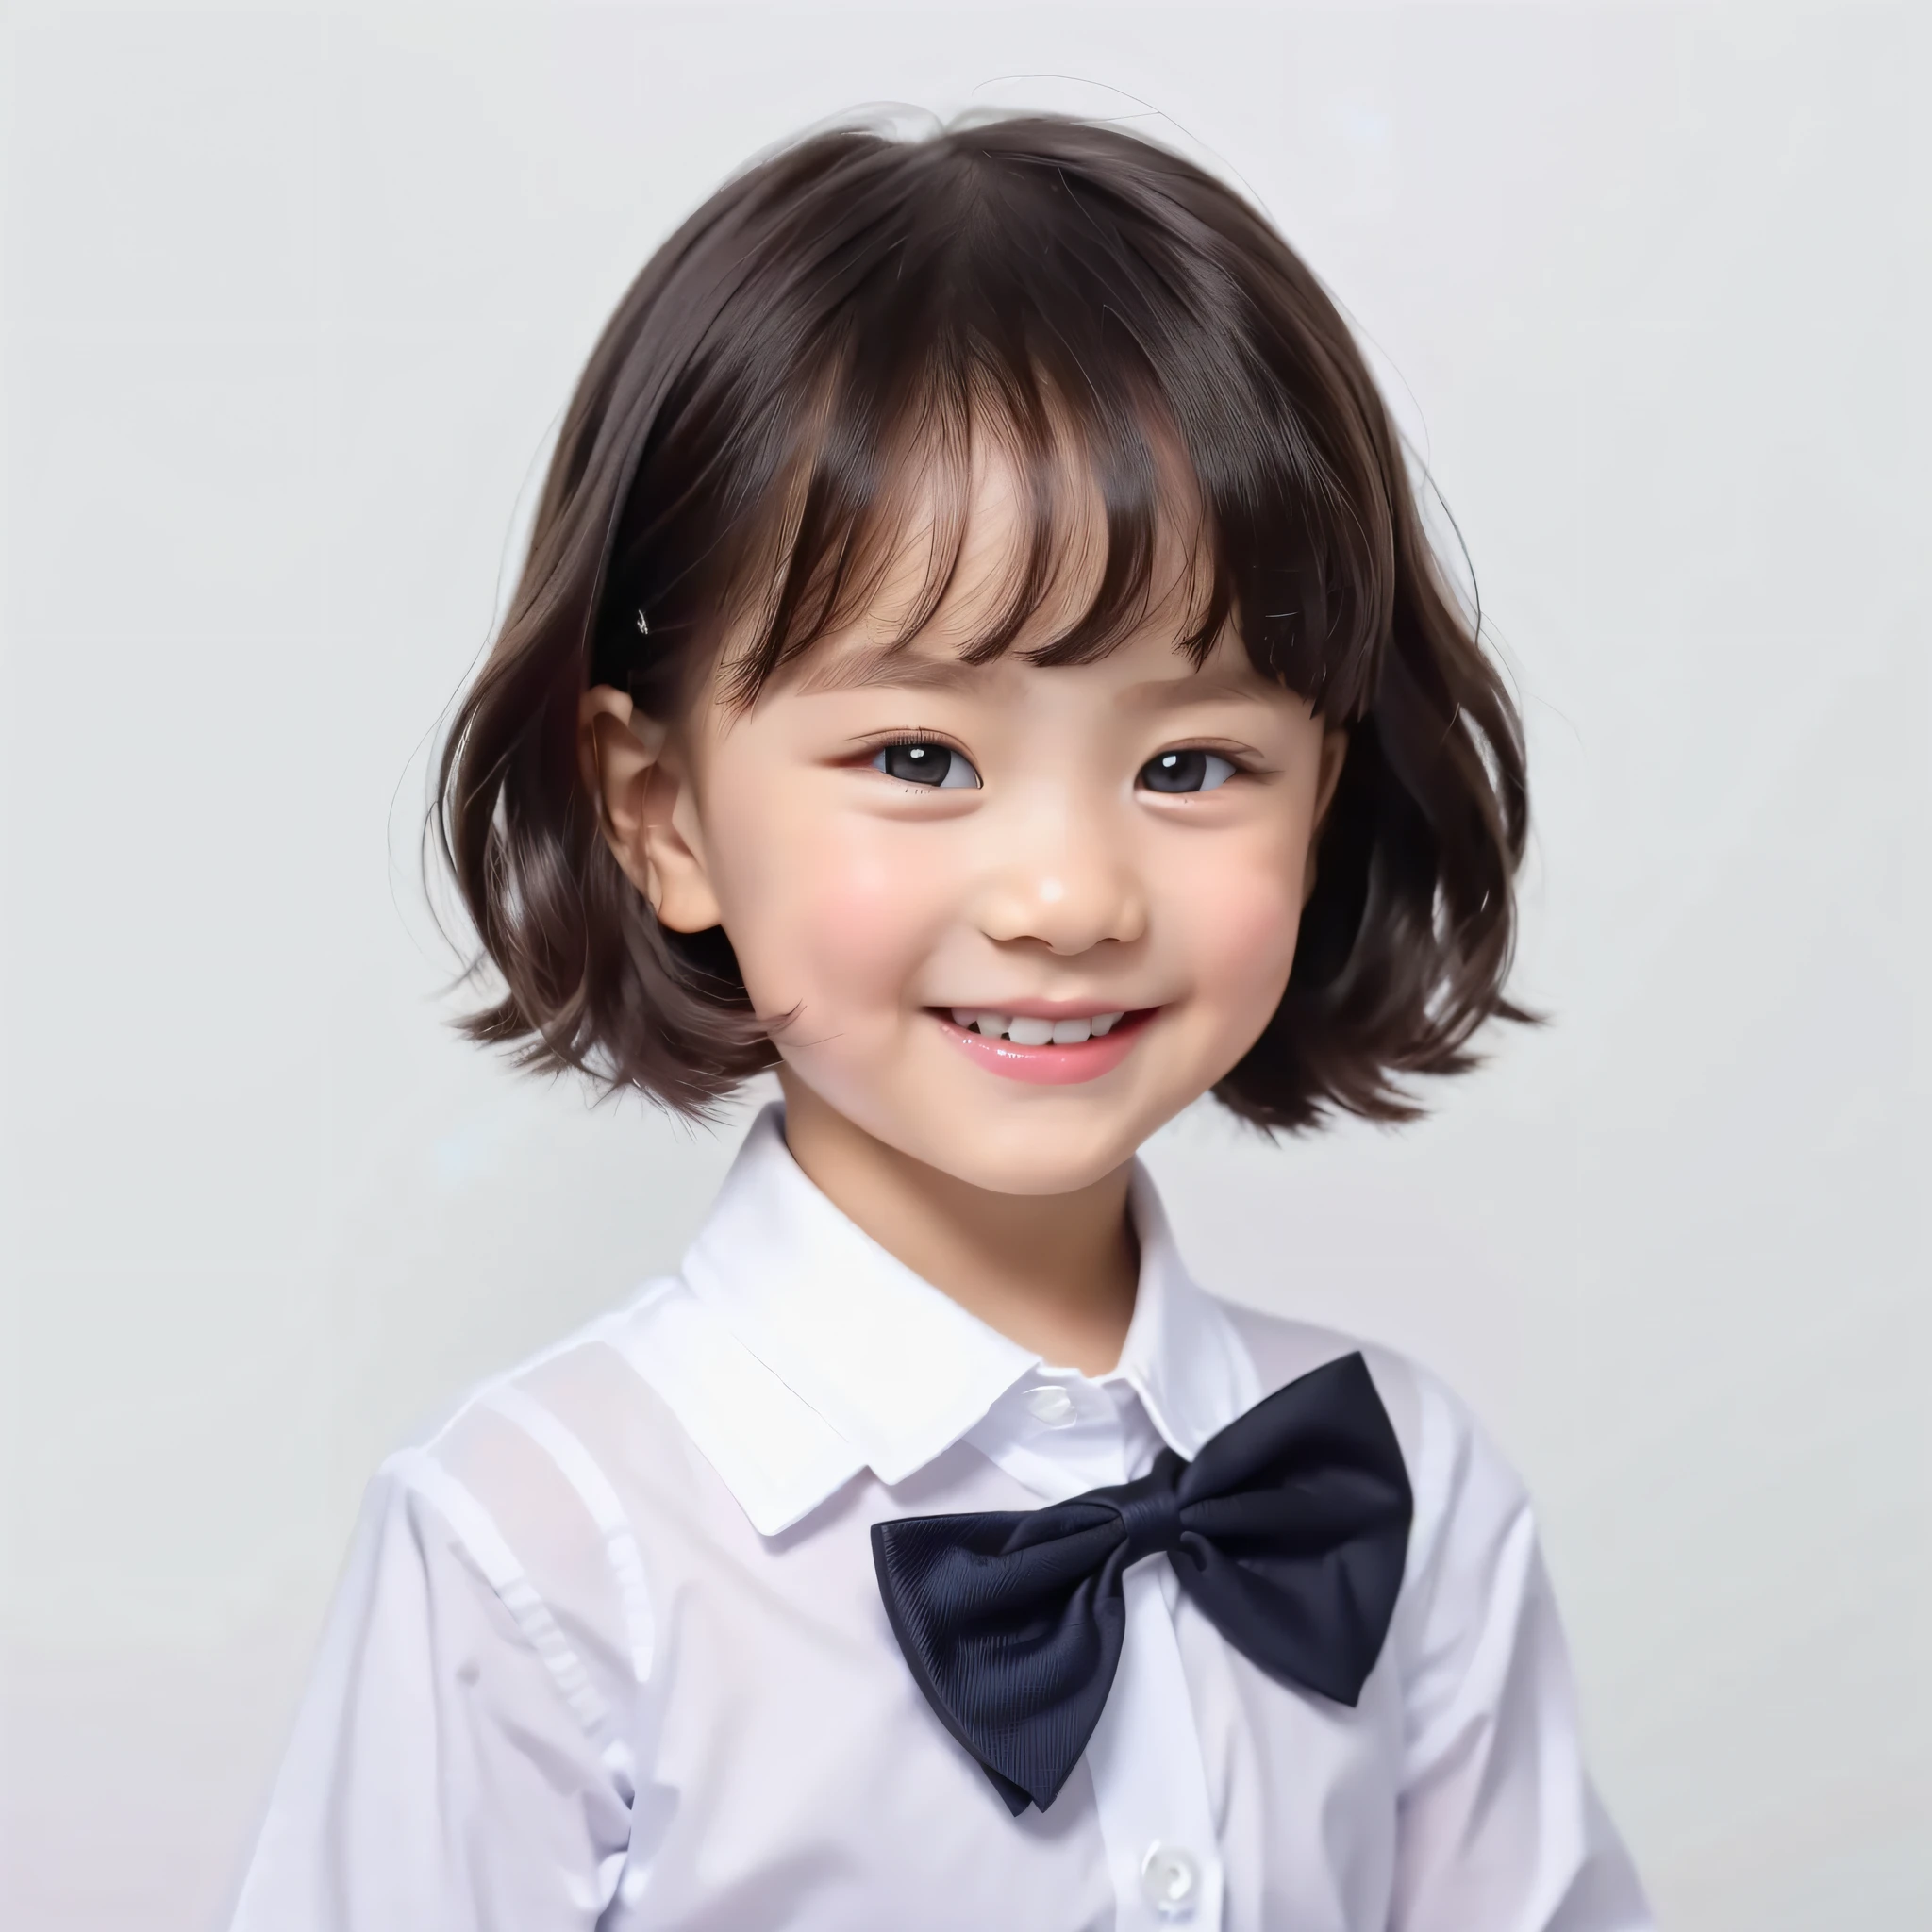 estilo moderno, fundo branco, Foto de identificação das crianças, bonitinho, garota sorridente, olhos escuros, cabelo curto, gravata borboleta, claro, alta qualidade